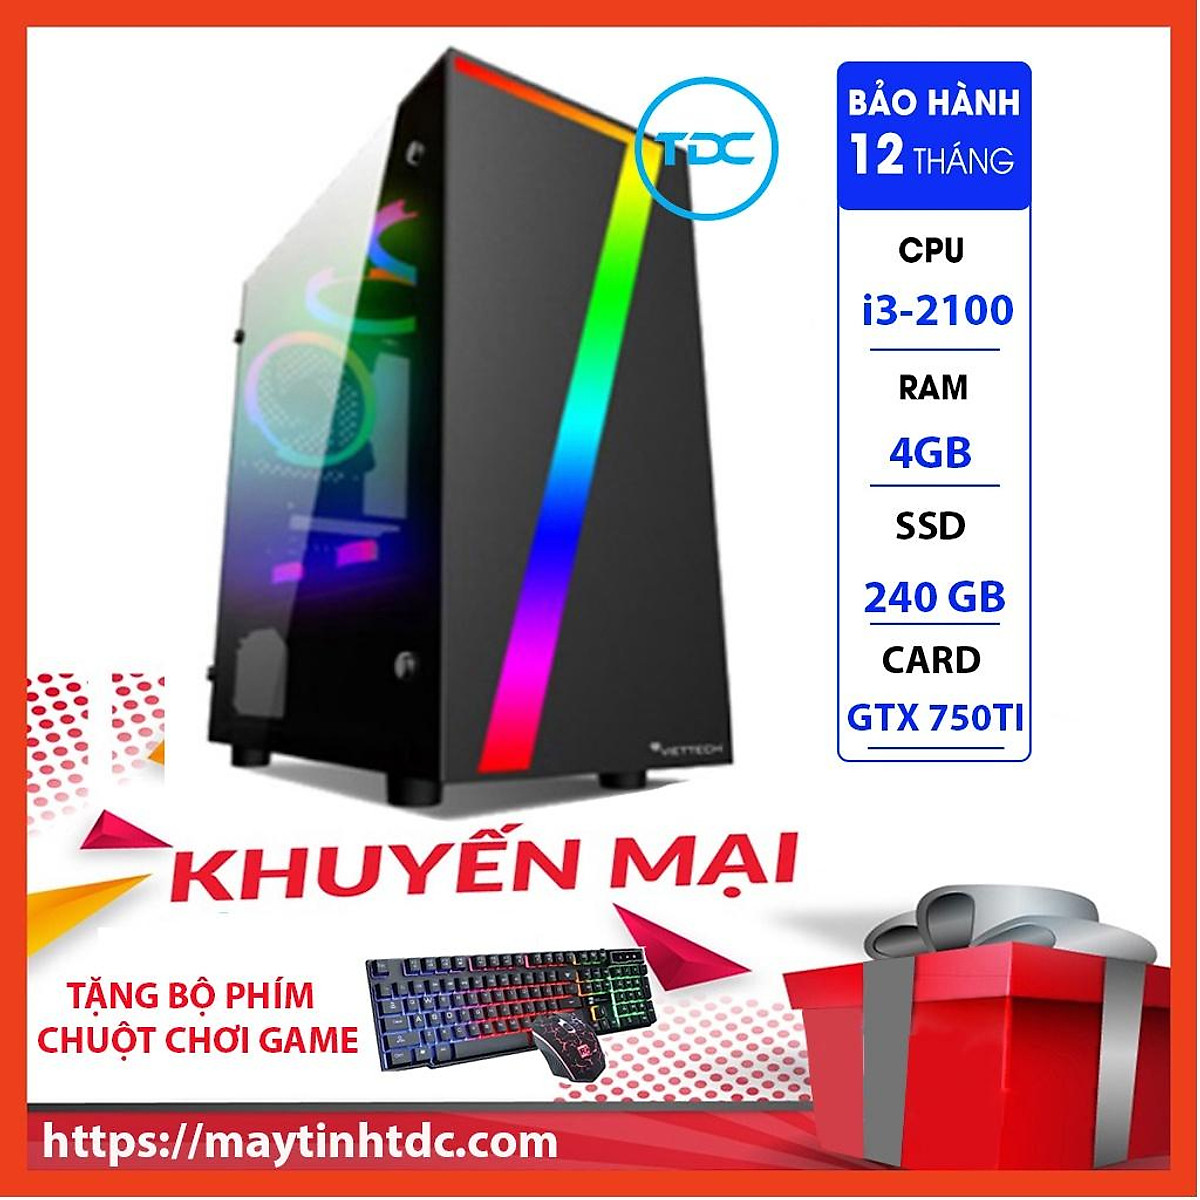 MAX PC GAMING X7 CPU Core i3-2100 Ram 4GB SSD 240GB GTX 750TI Chơi PUBG,LOL,CF,Fifa4,Đế chế Tặng Bộ Phím Chuột Game